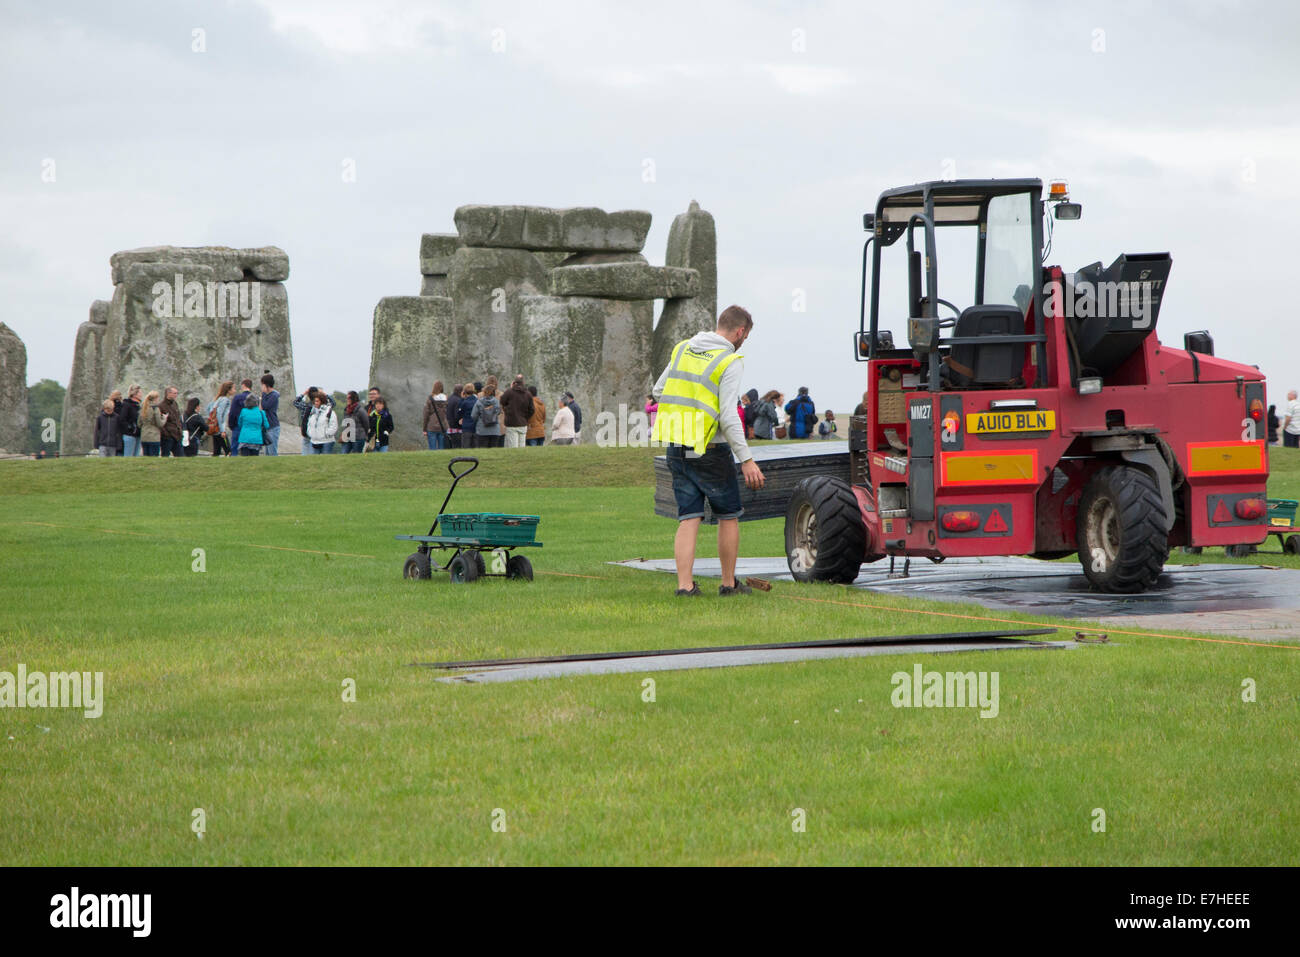 Lavoratore lavora presso la posa di fogli protettivi a Stonehenge / Pietra sito Henge con turisti / tourist in background. Regno Unito. Foto Stock